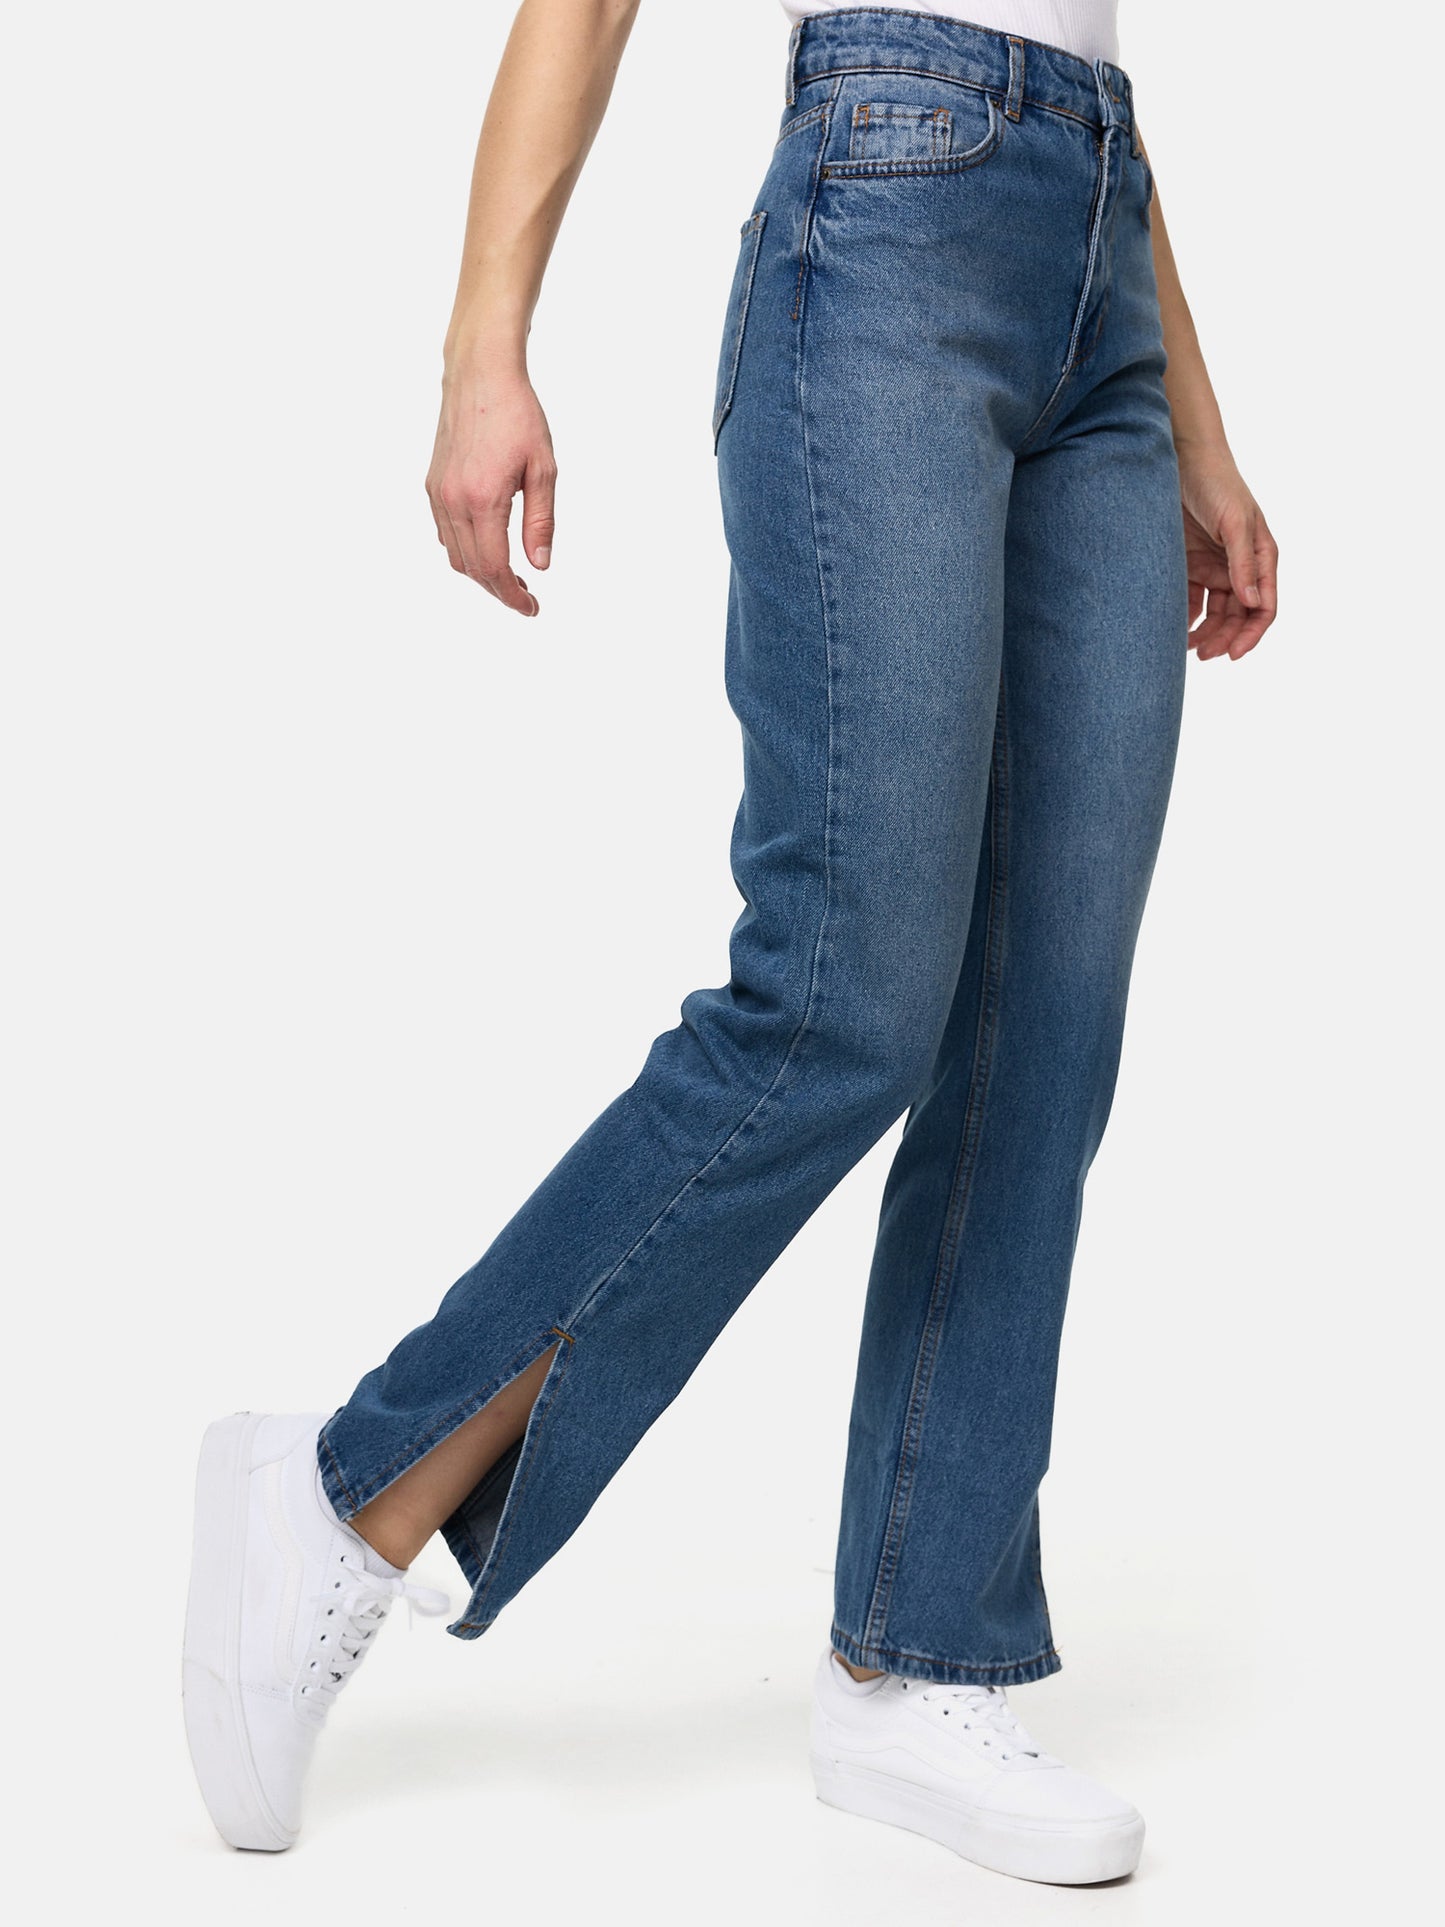 Tazzio Damen Straight Leg Jeans F121